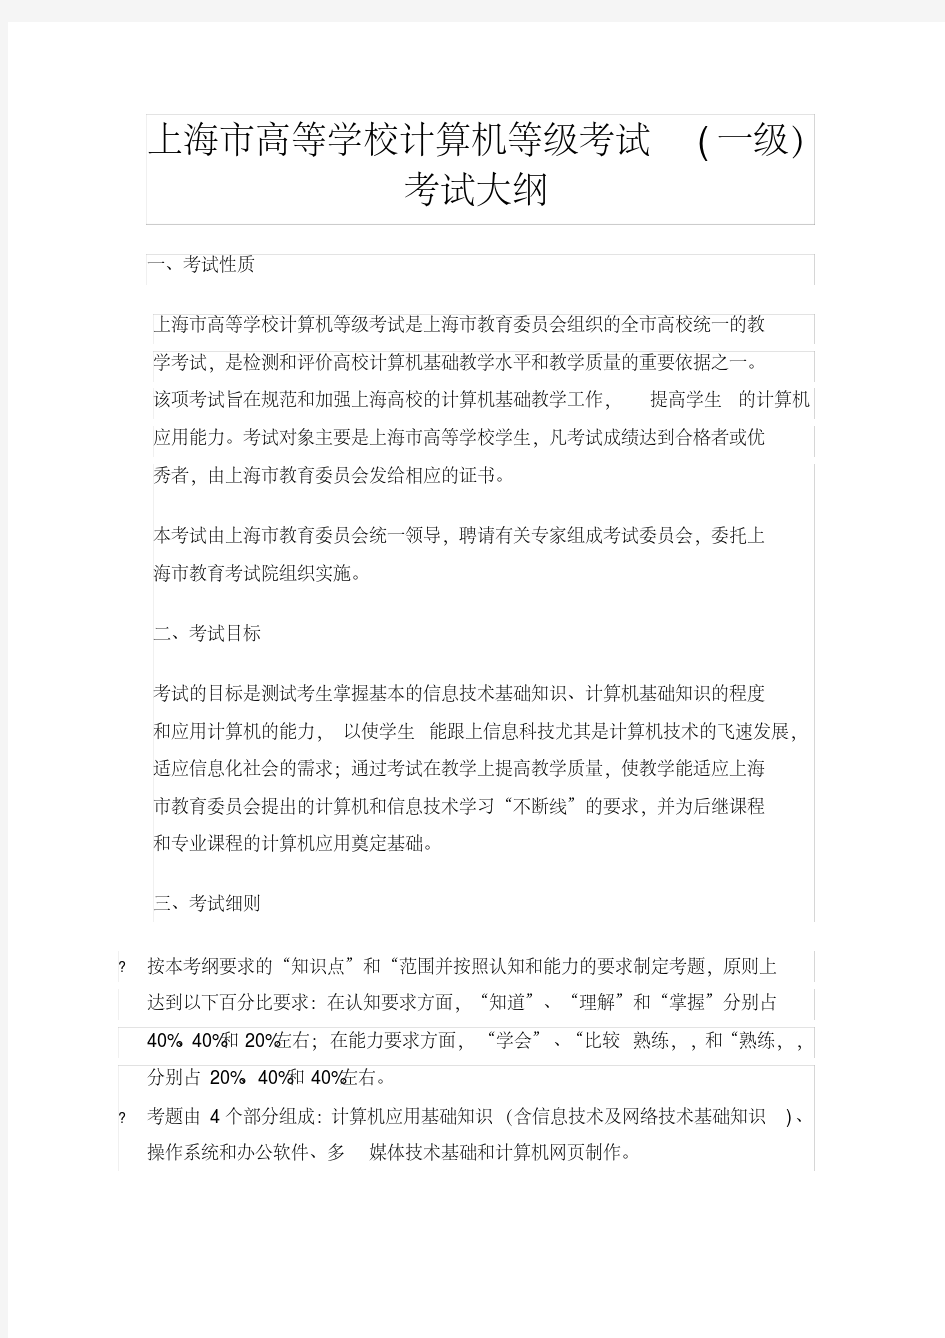 上海市高等学校计算机等级考试(一级)考试大纲